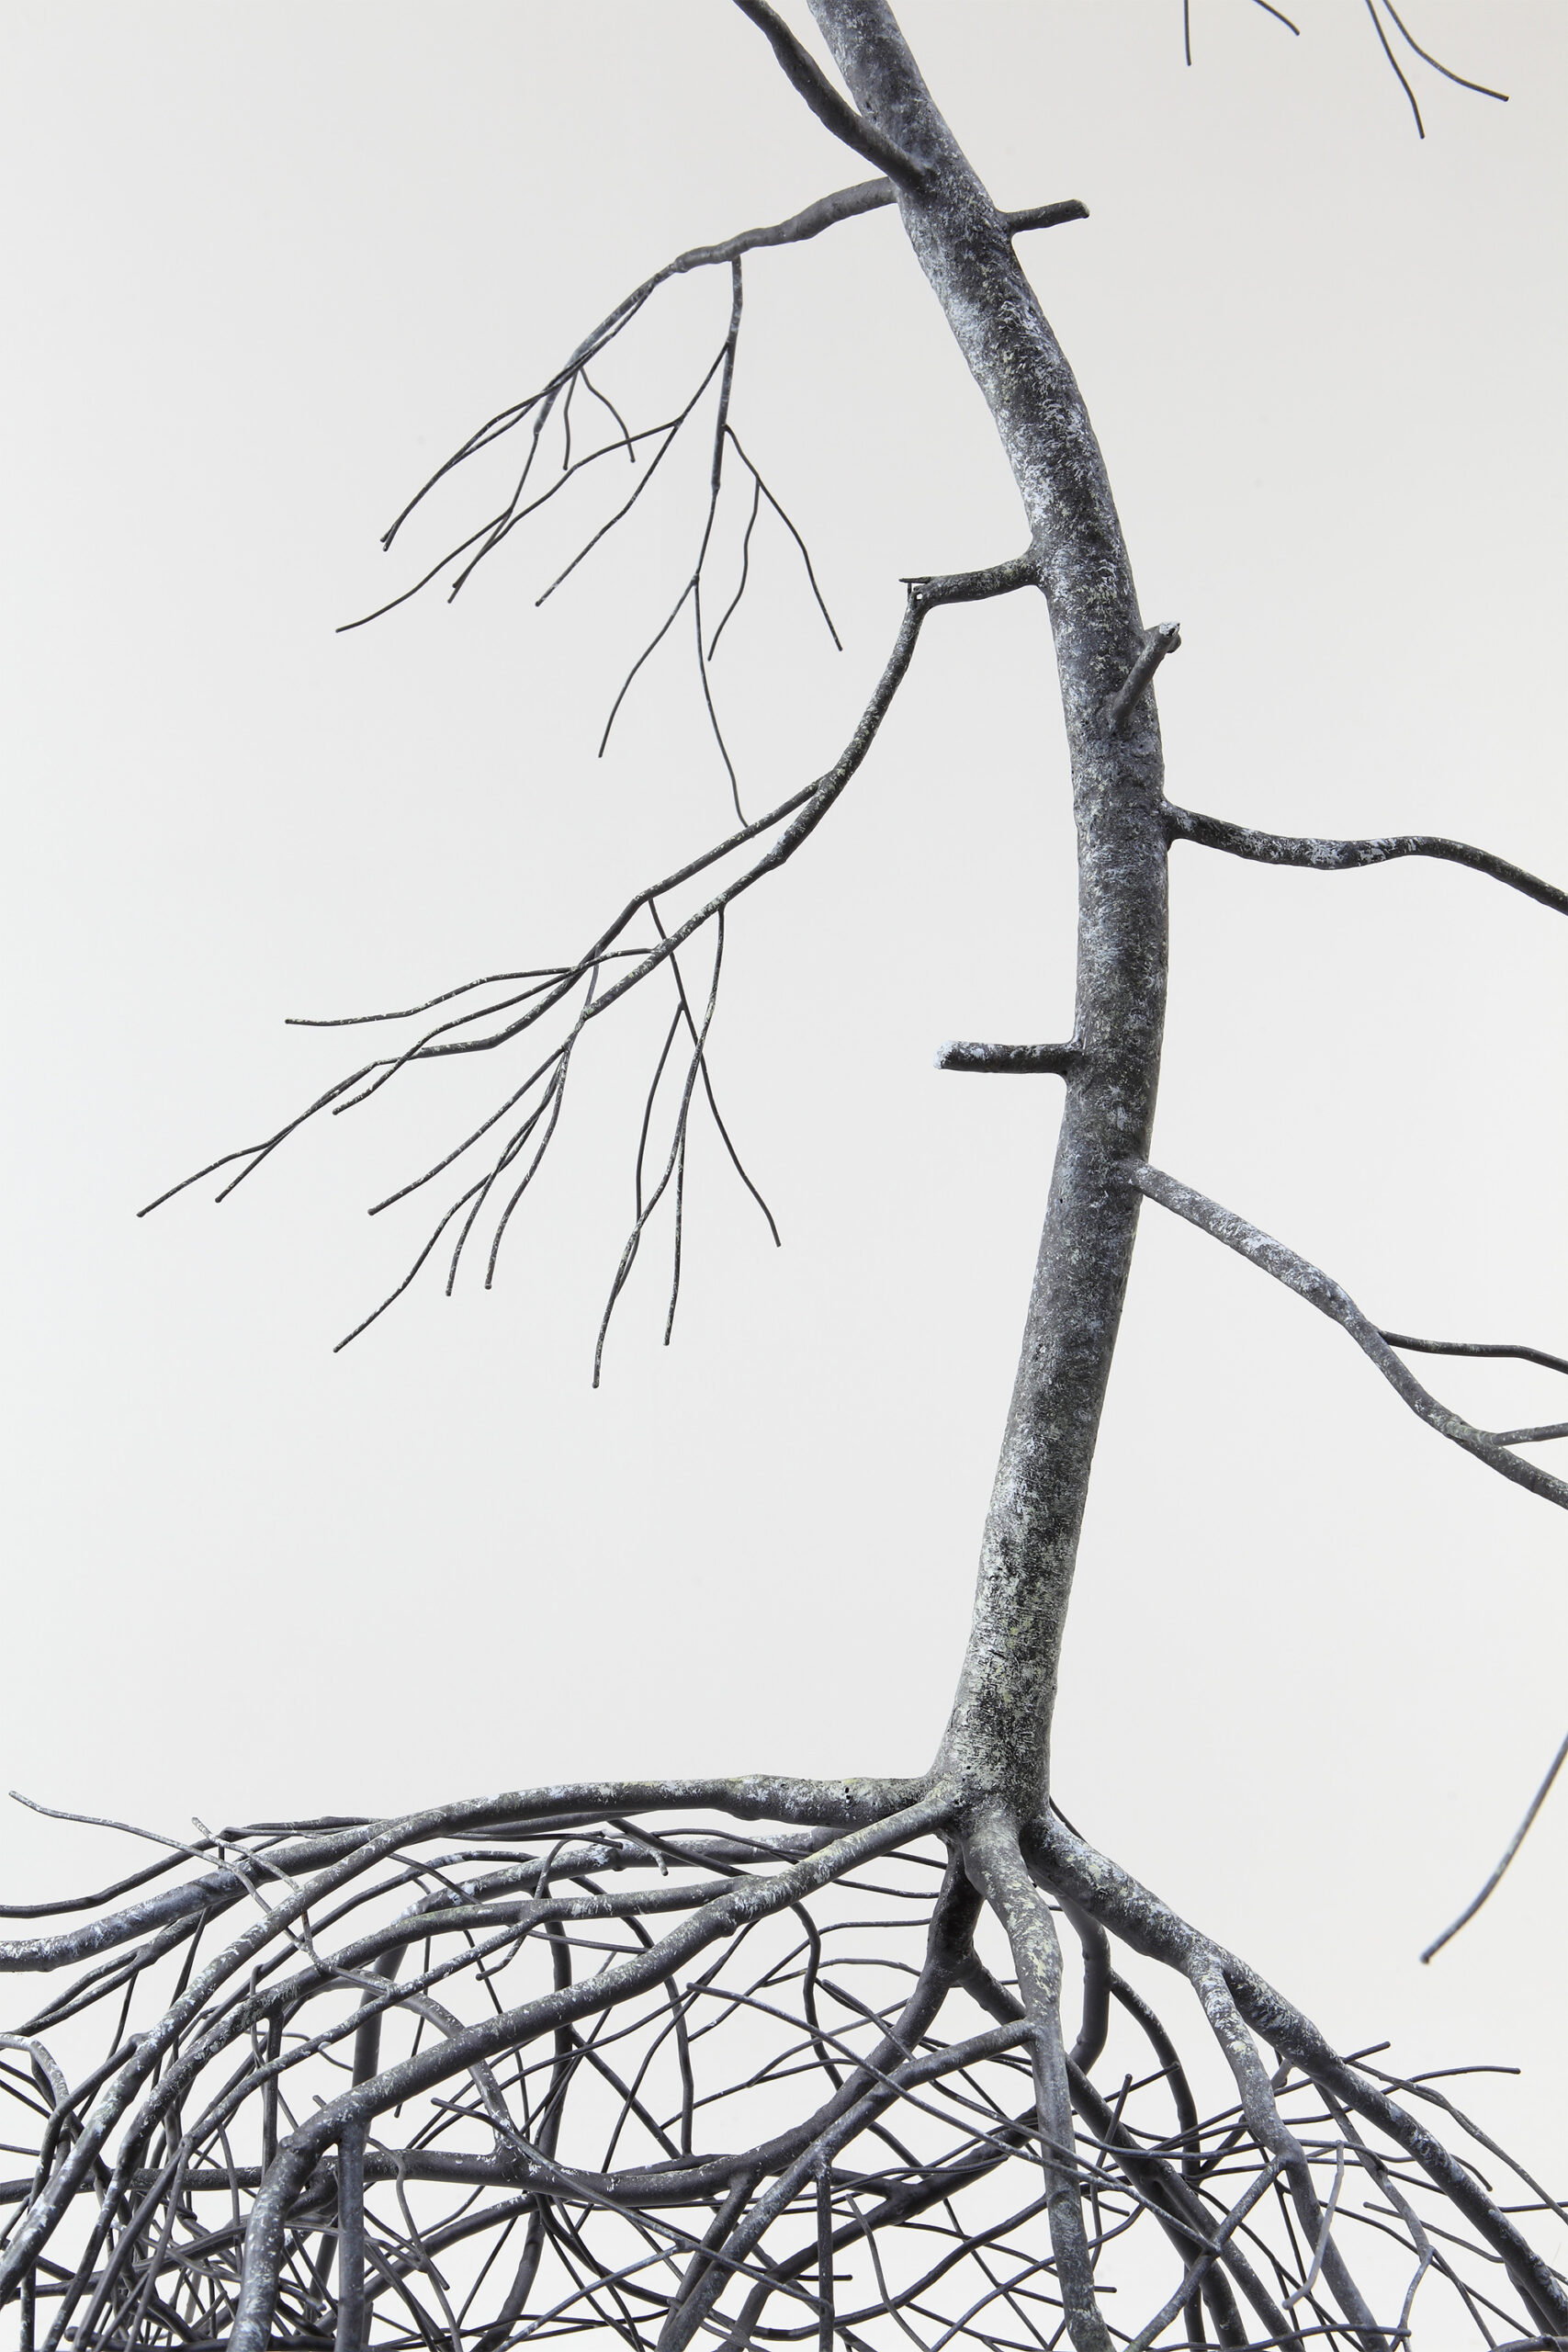 Stainless Steel Roots Sprawl Into Figurative Sculptures by Artist Sun-Hyuk Kim | 国外美陈 美陈网站 美陈前沿 